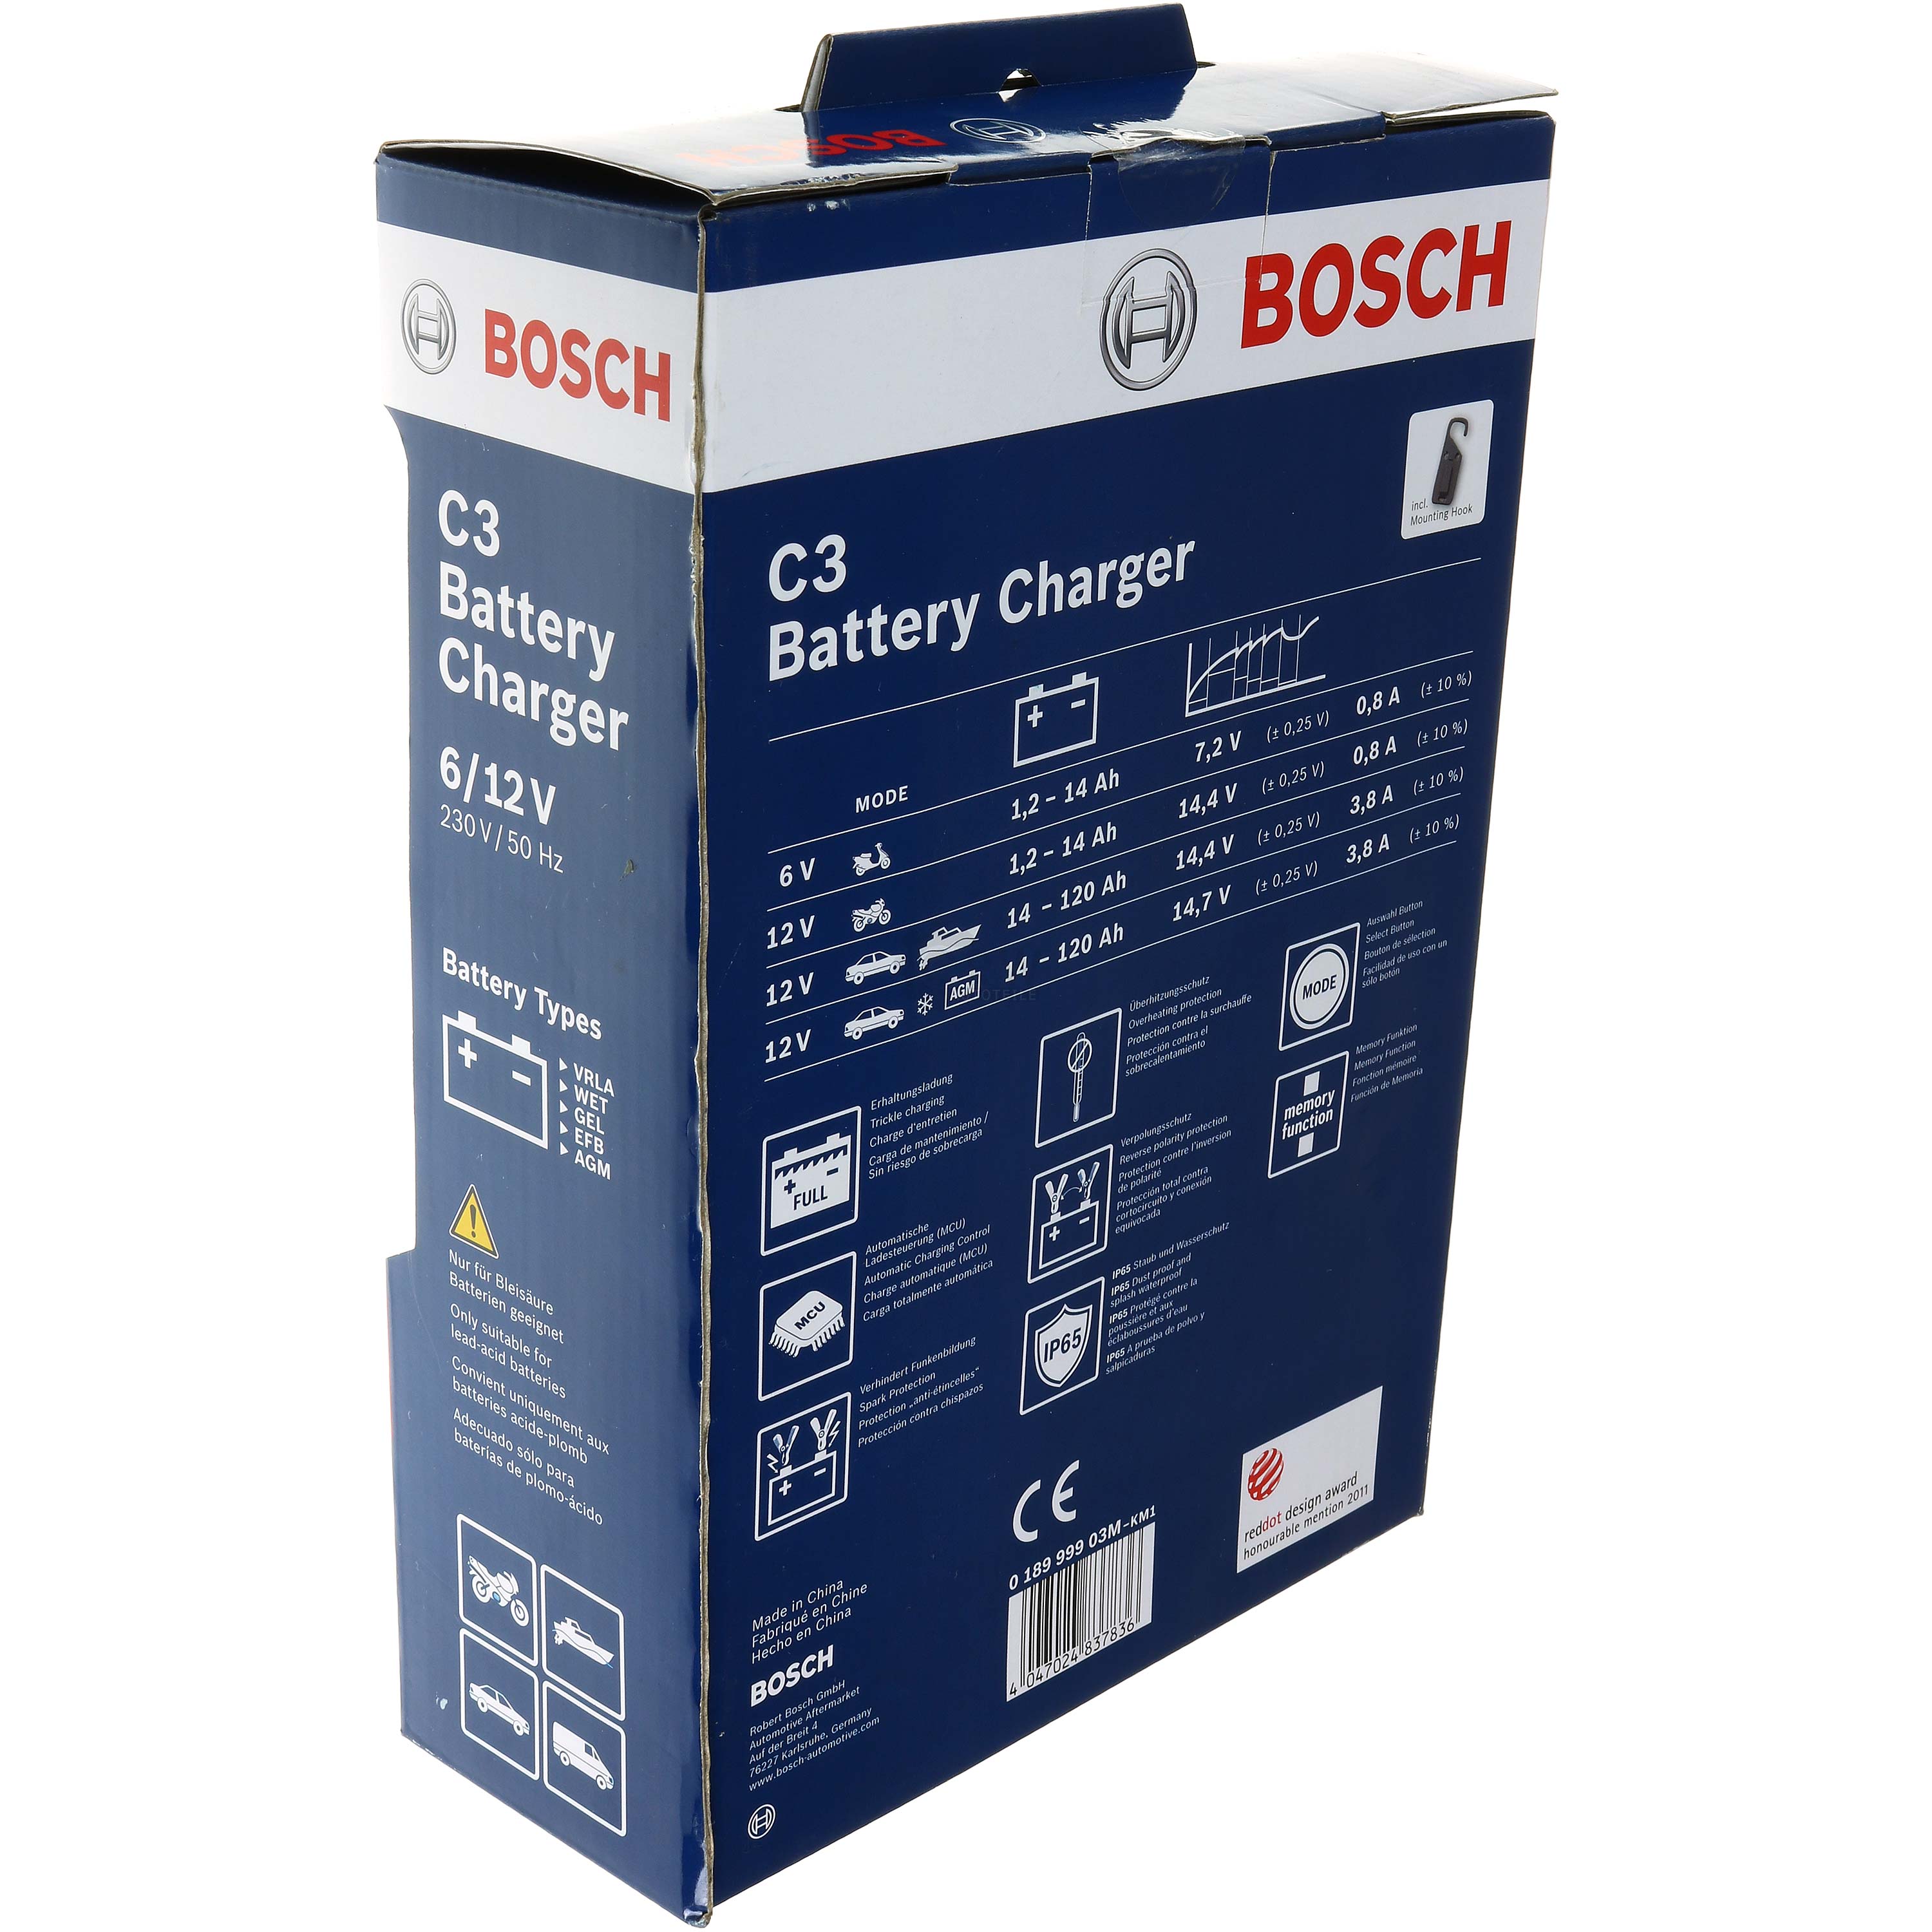 BOSCH Batterieladegerät Automatik-Lader C3 6V/12V 120Ah 0 189 999 03M